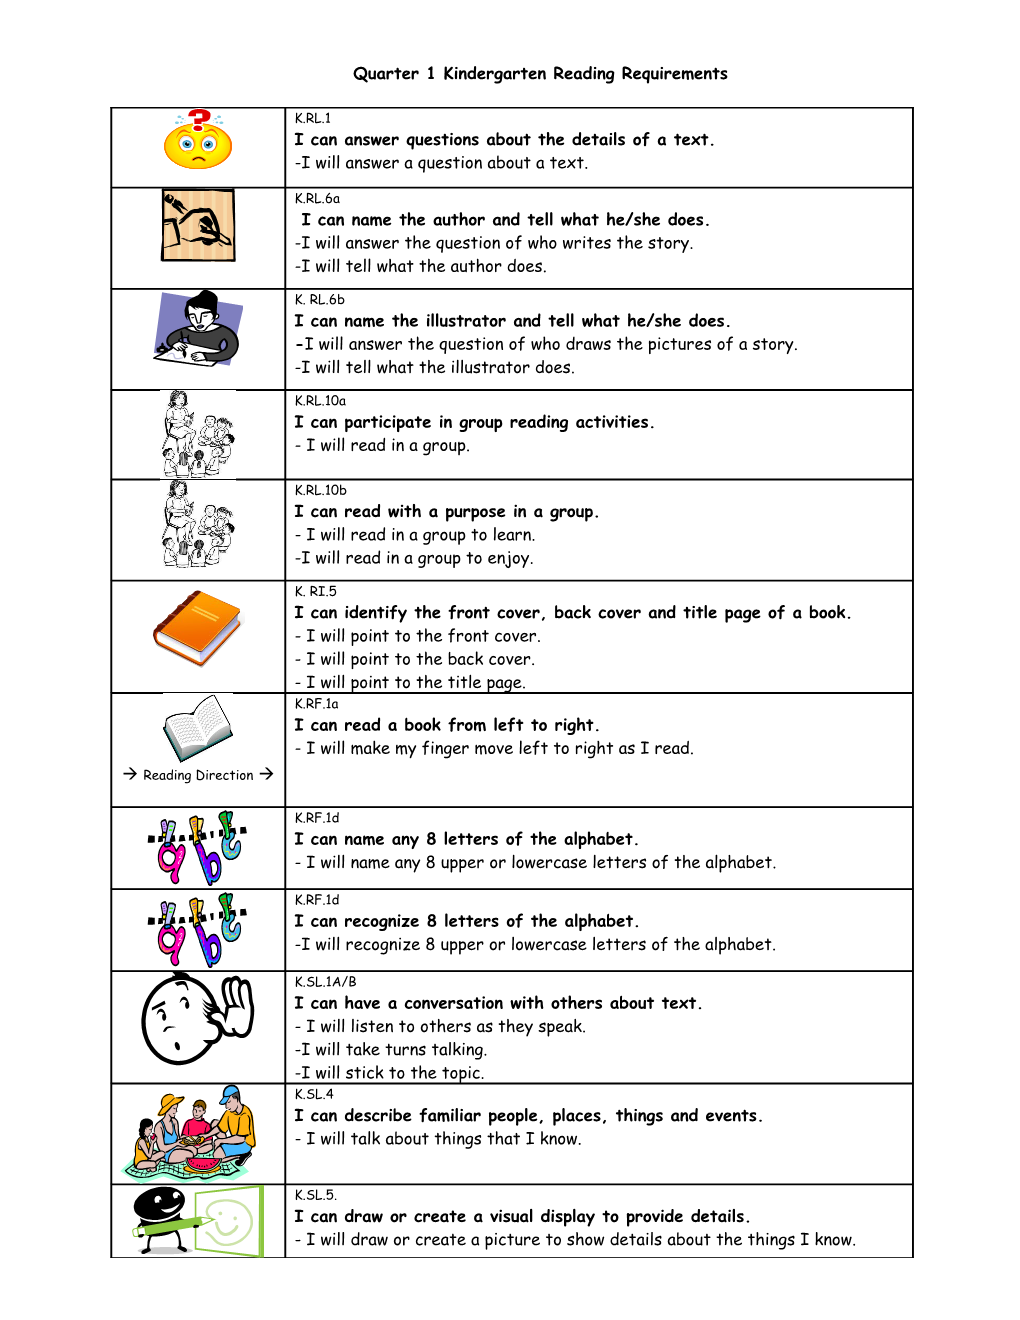 Quarter 1 Kindergarten Reading Requirements